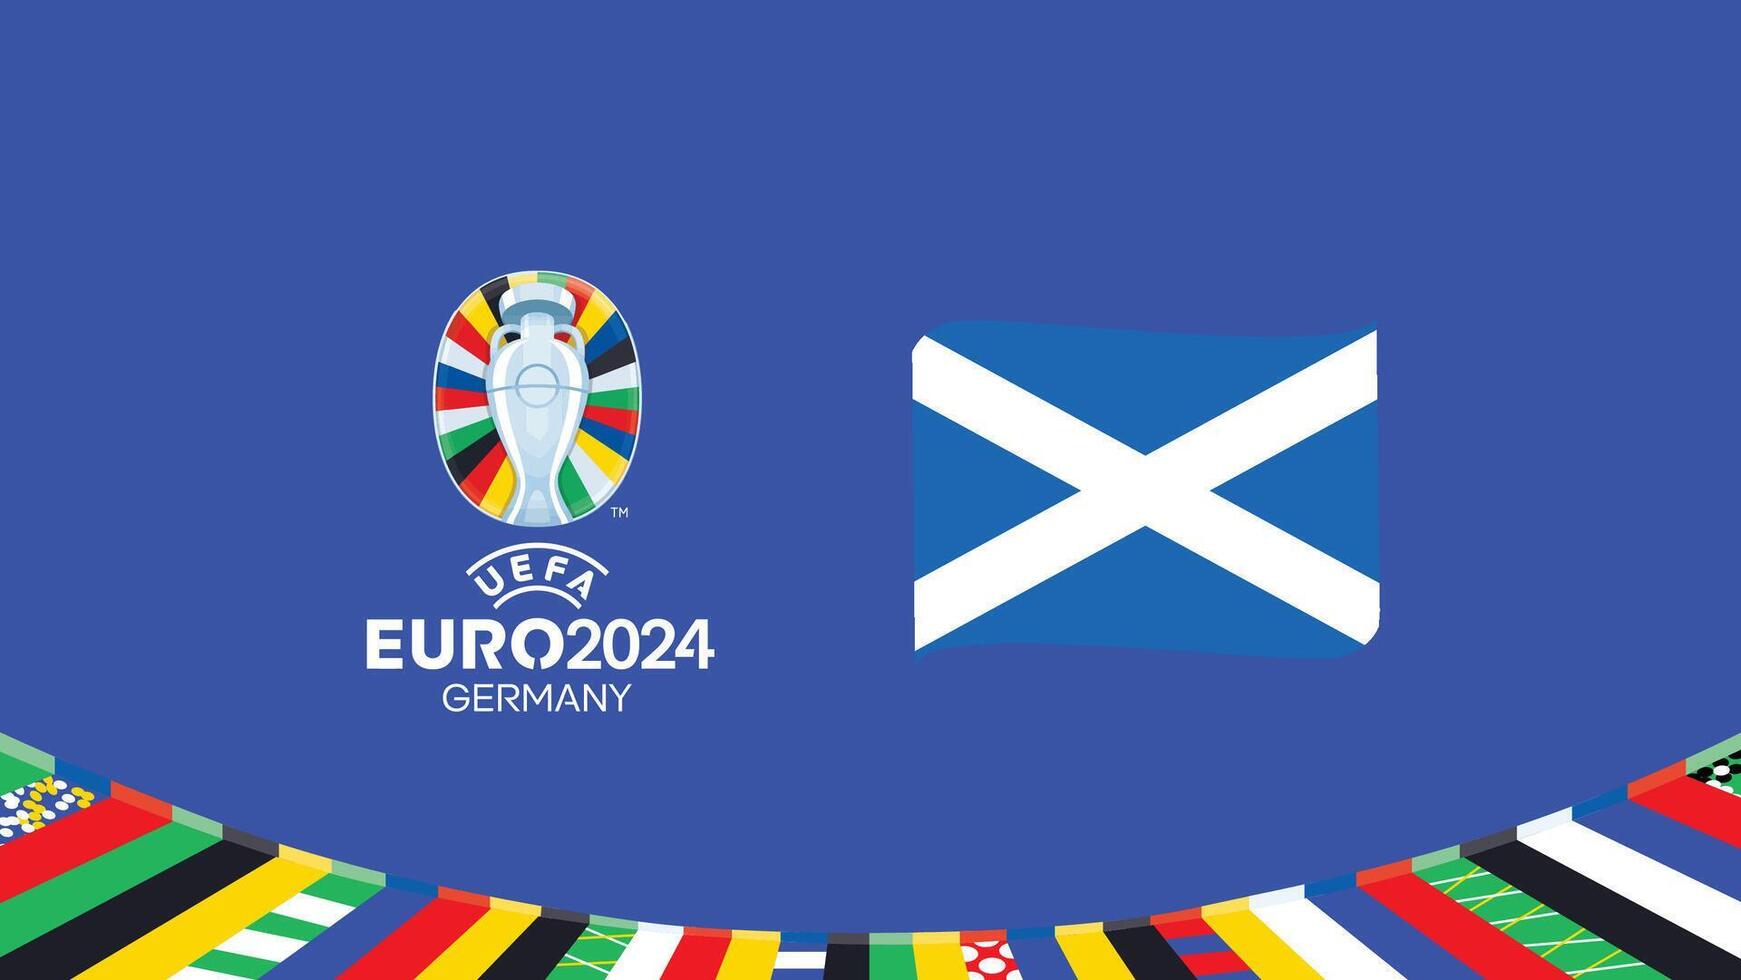 Euro 2024 Scozia bandiera nastro squadre design con ufficiale simbolo logo astratto paesi europeo calcio illustrazione vettore